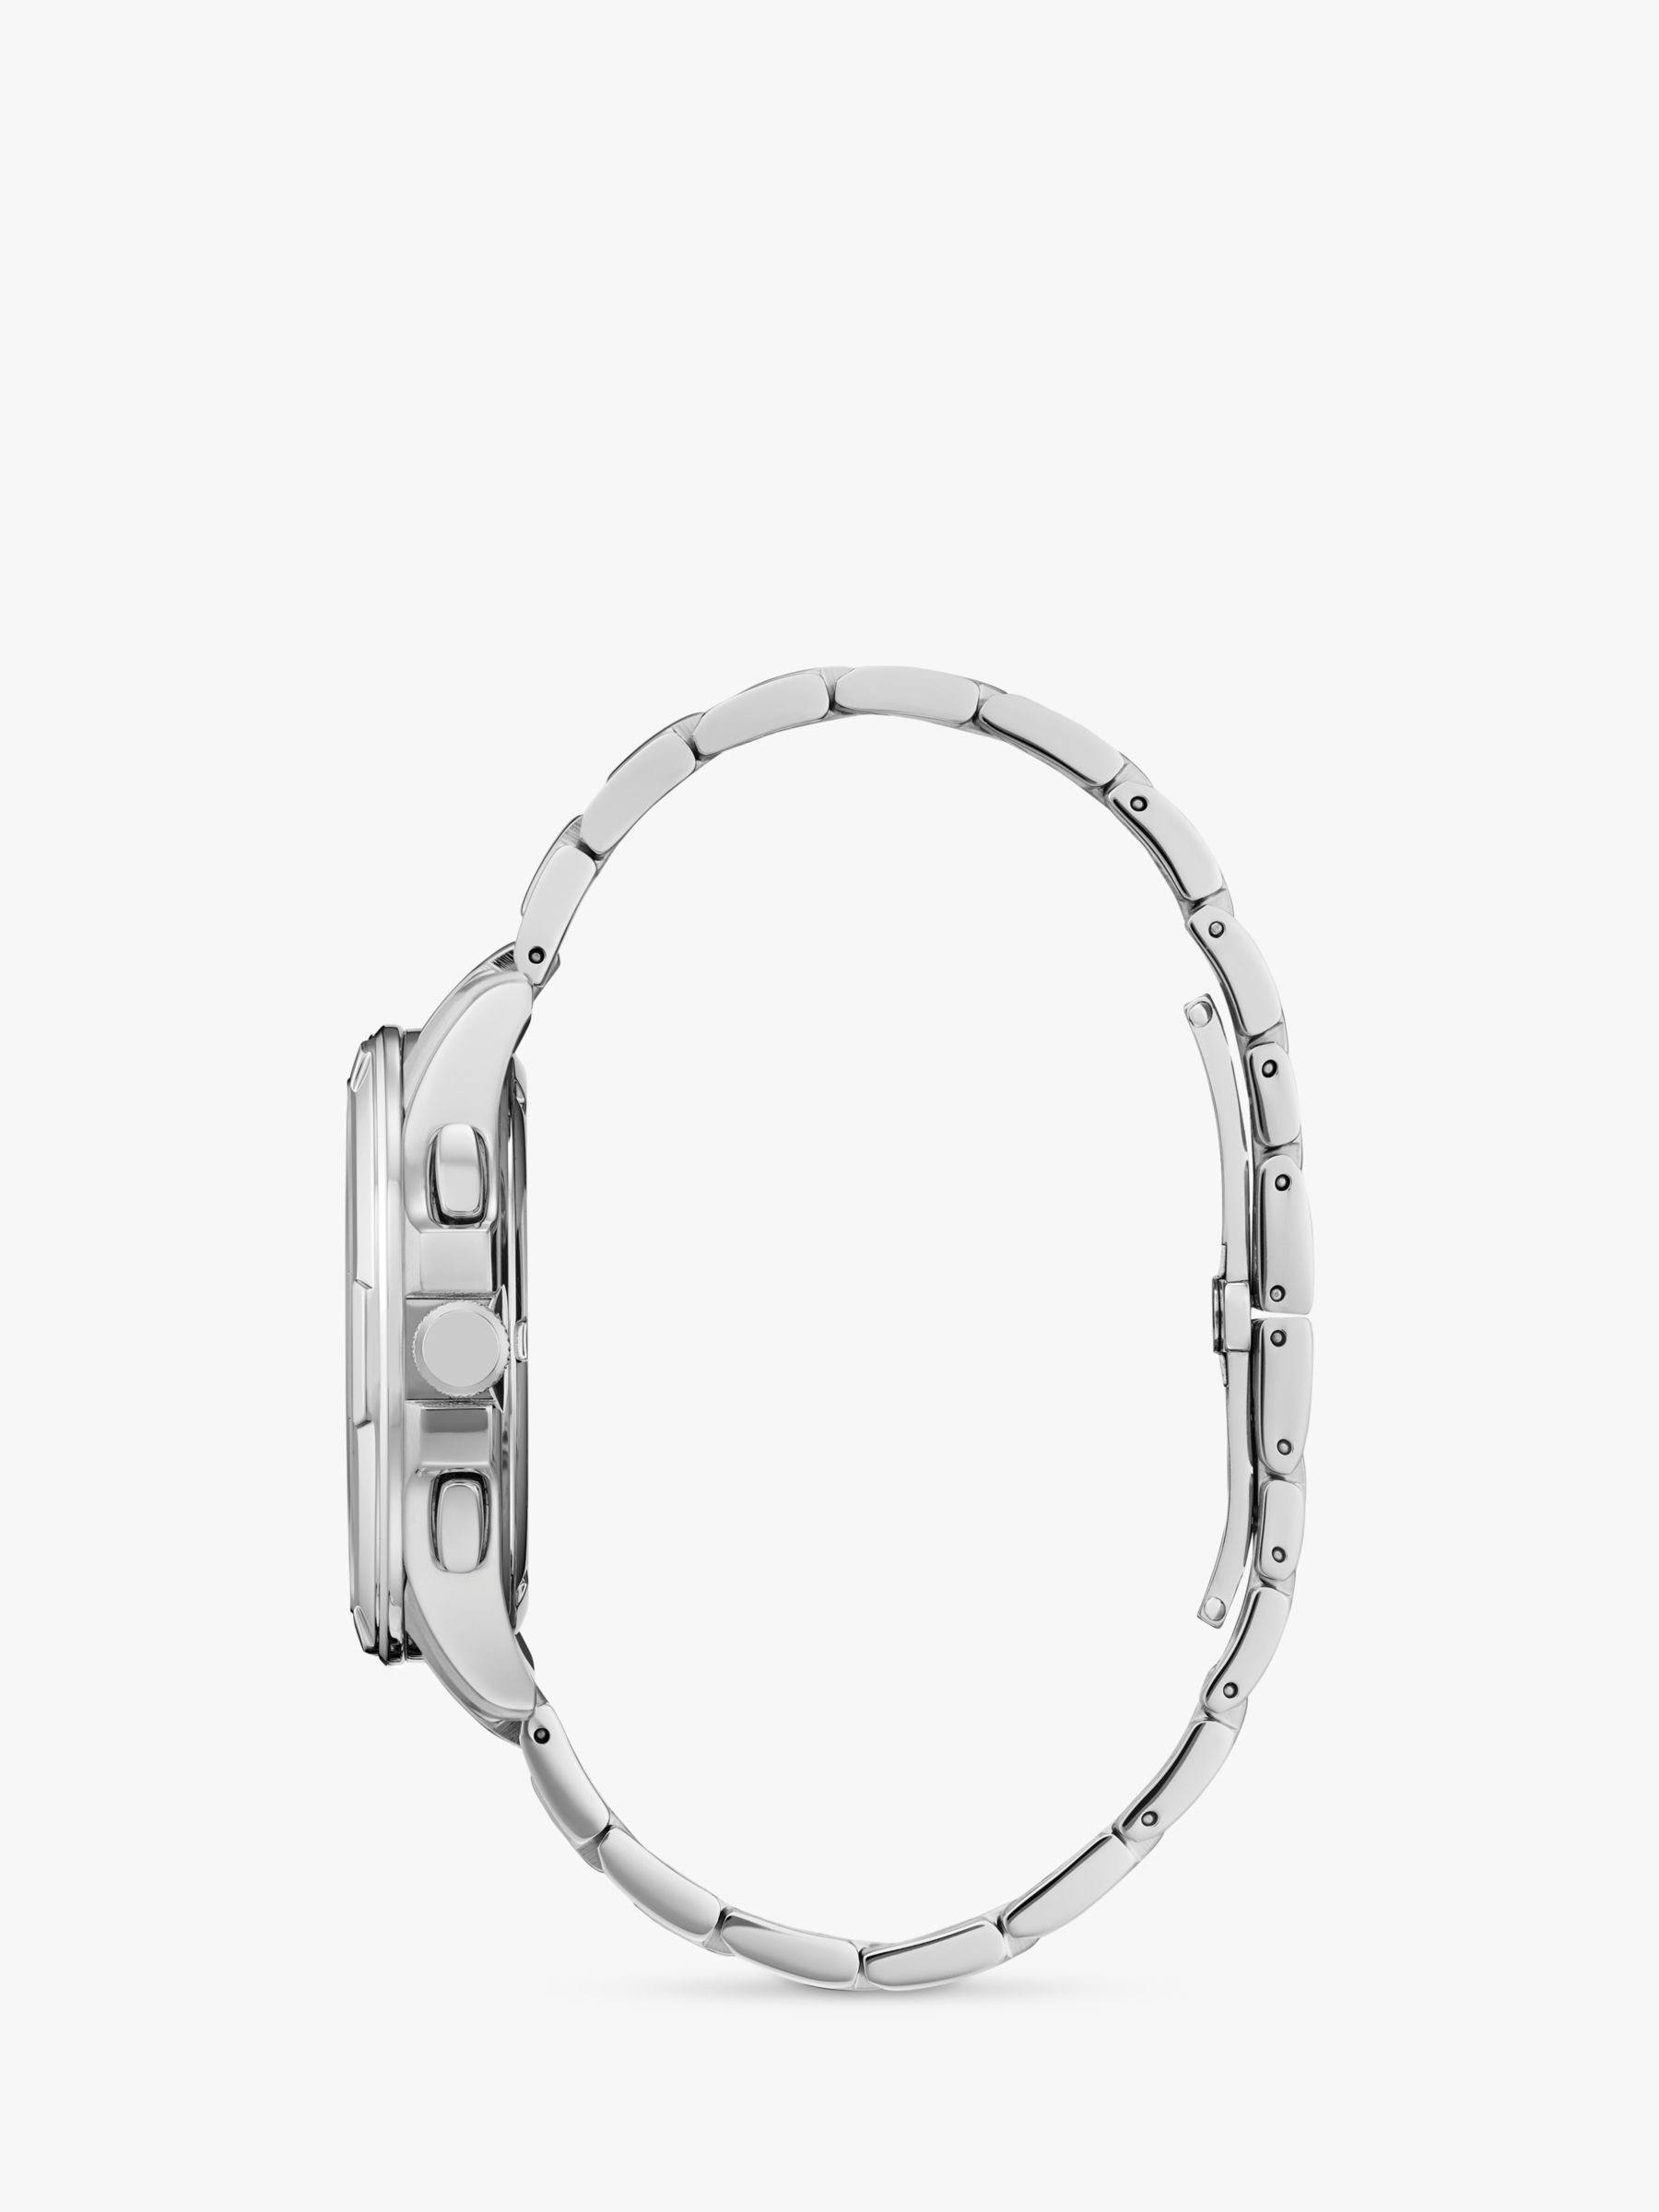 Citizen Men's Classic 8700 Eco-Drive Bracelet Strap Watch, Silver